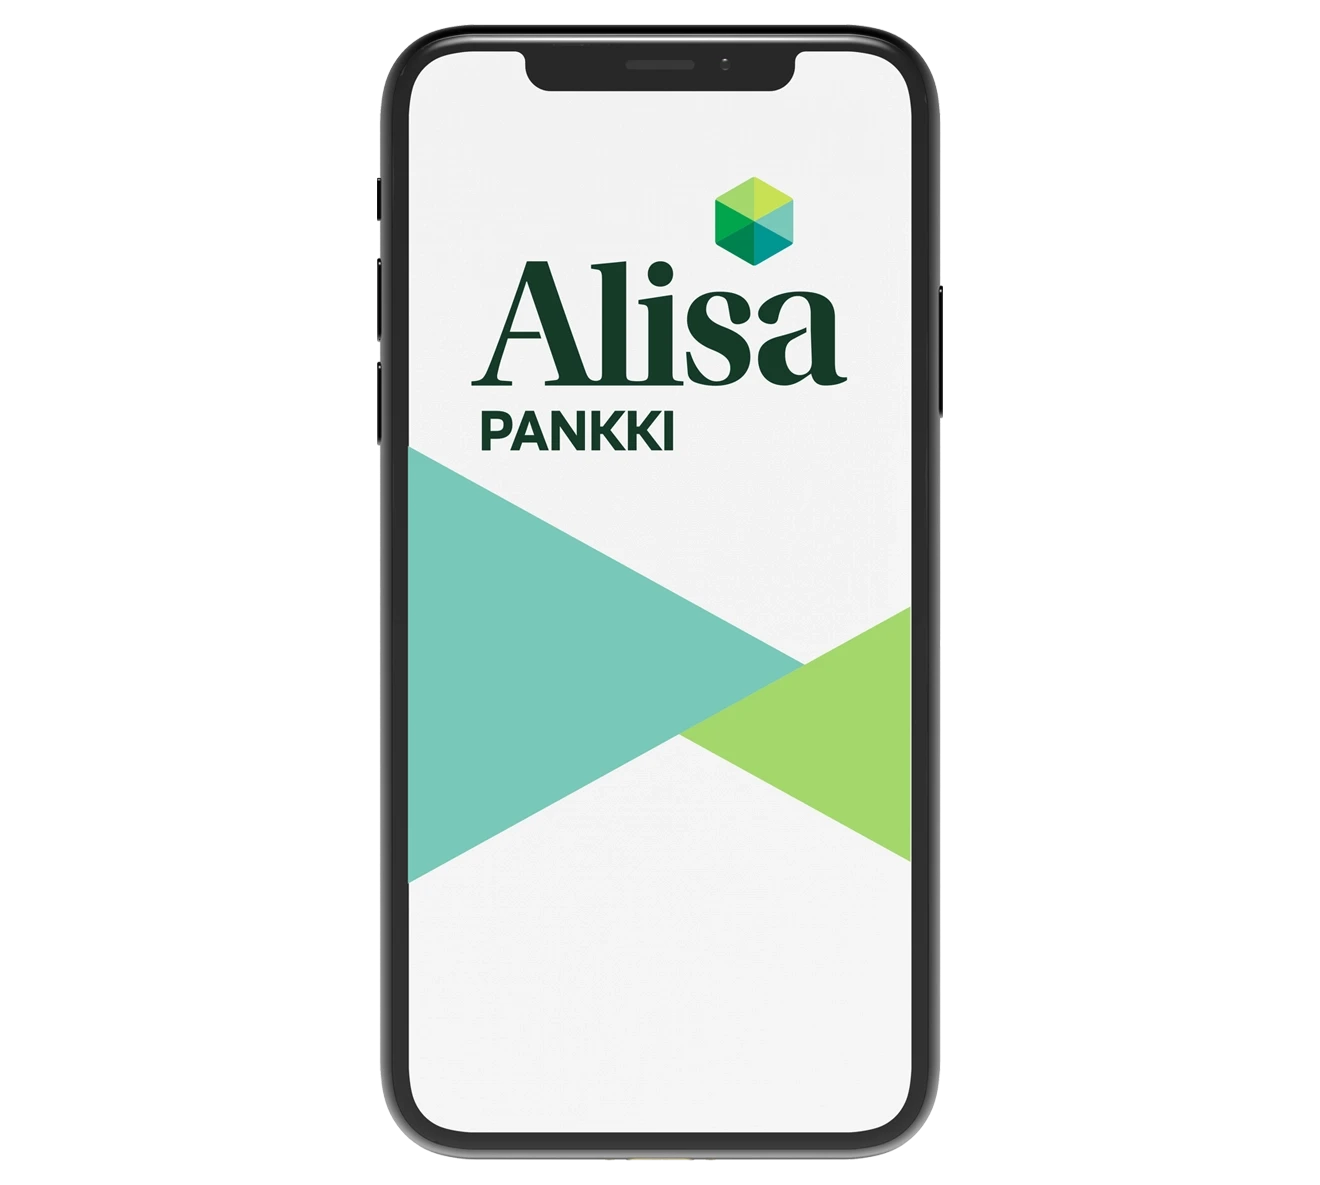 Alisa Pankki mobiilisovellus